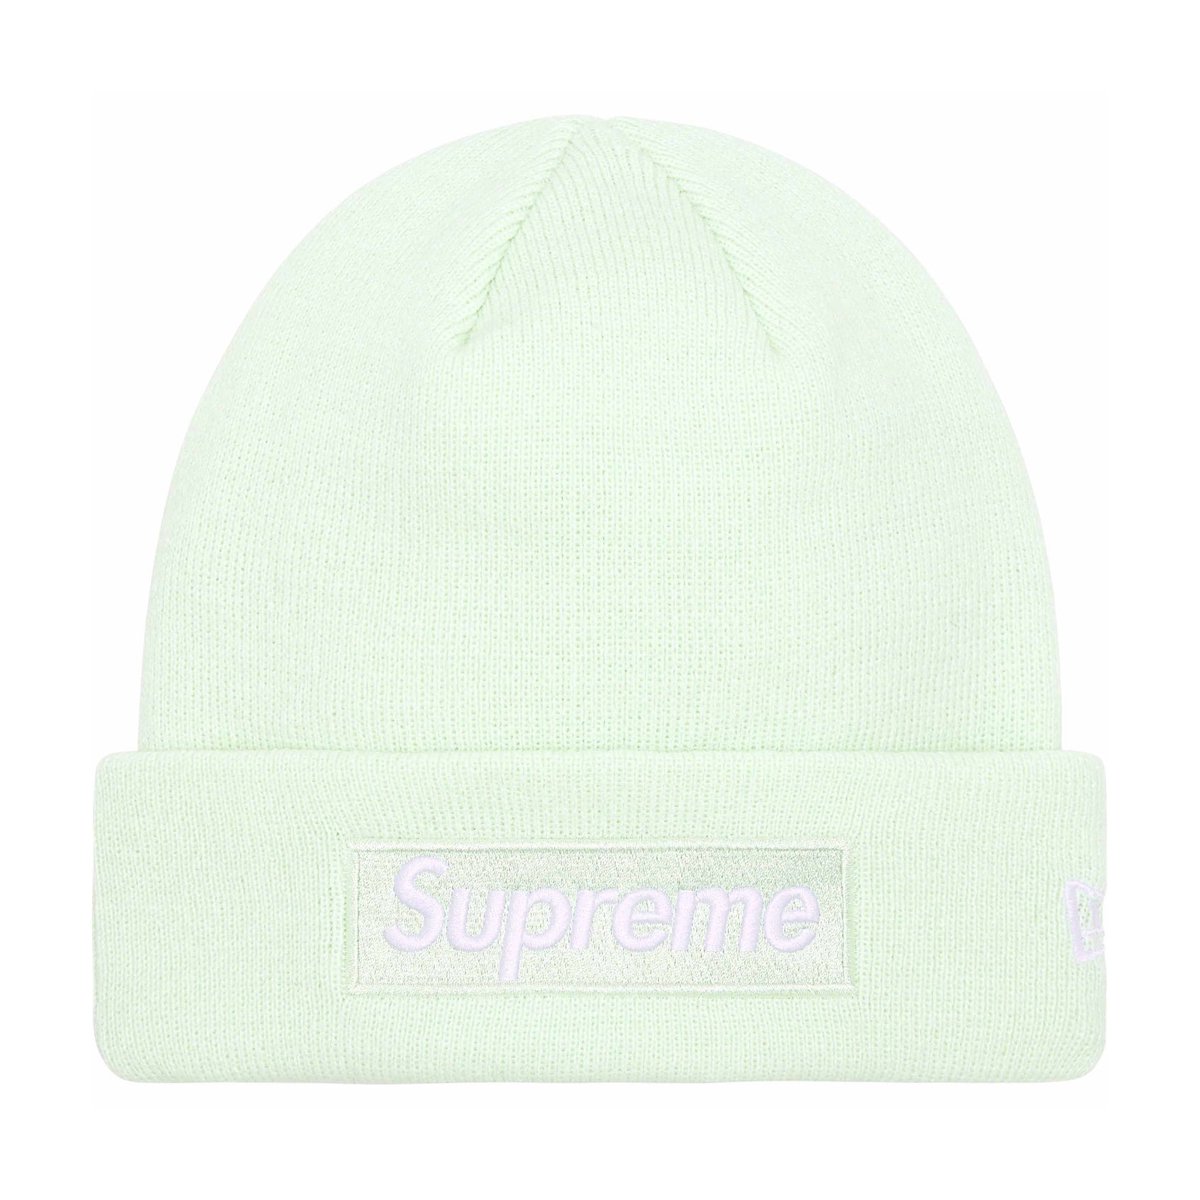 Supreme New Era Box Logo ビーニー ホワイト帽子